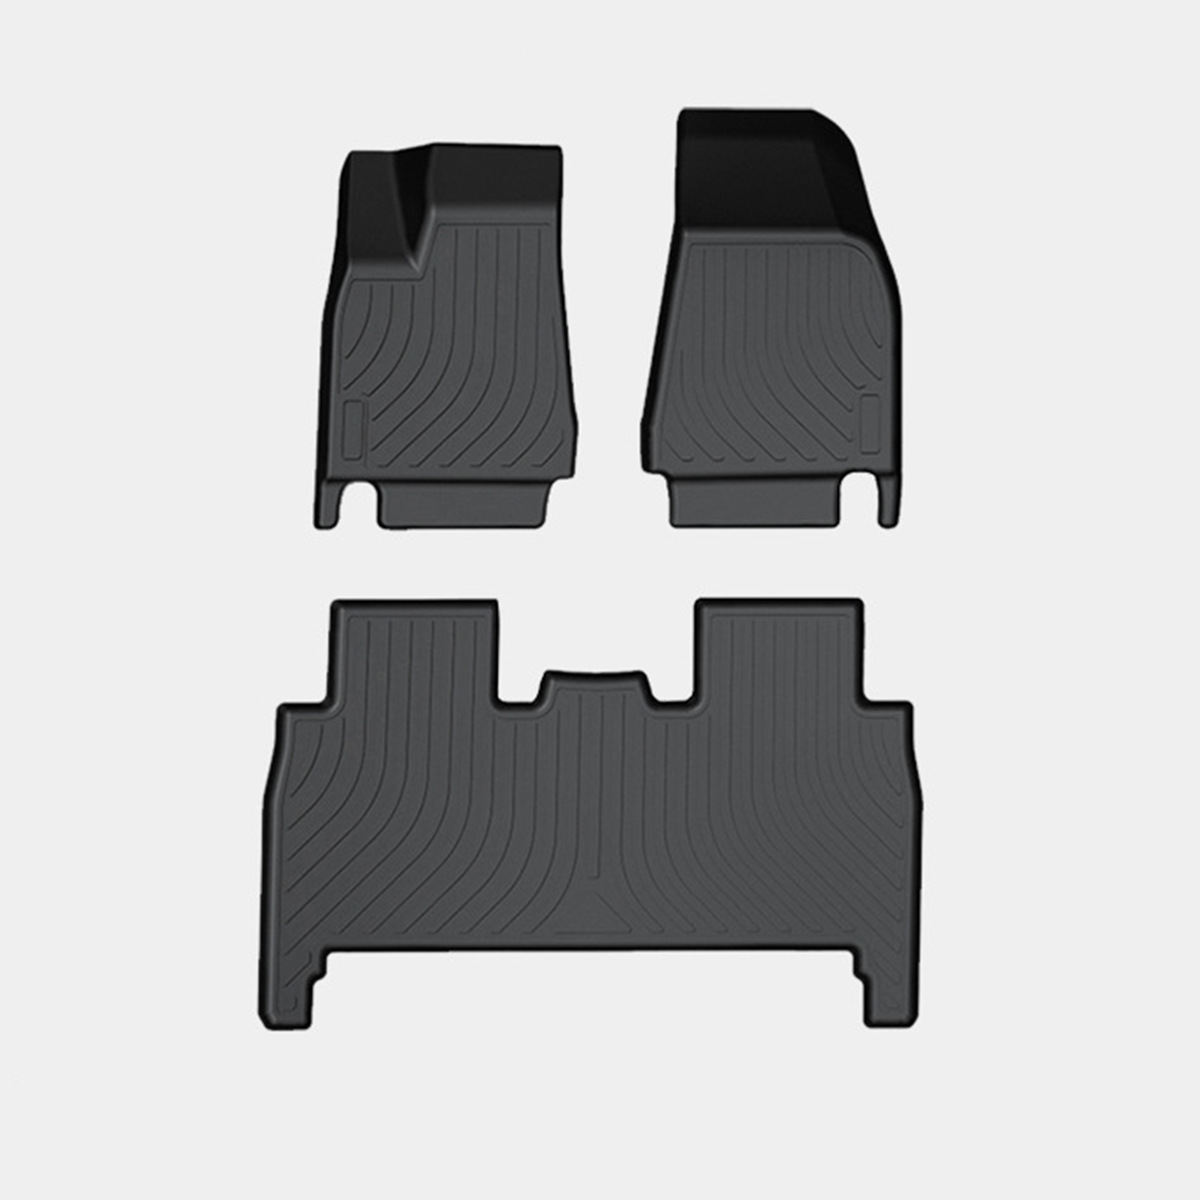 Tesla Model X Floor Mats for 5 Seats (2016-2020)